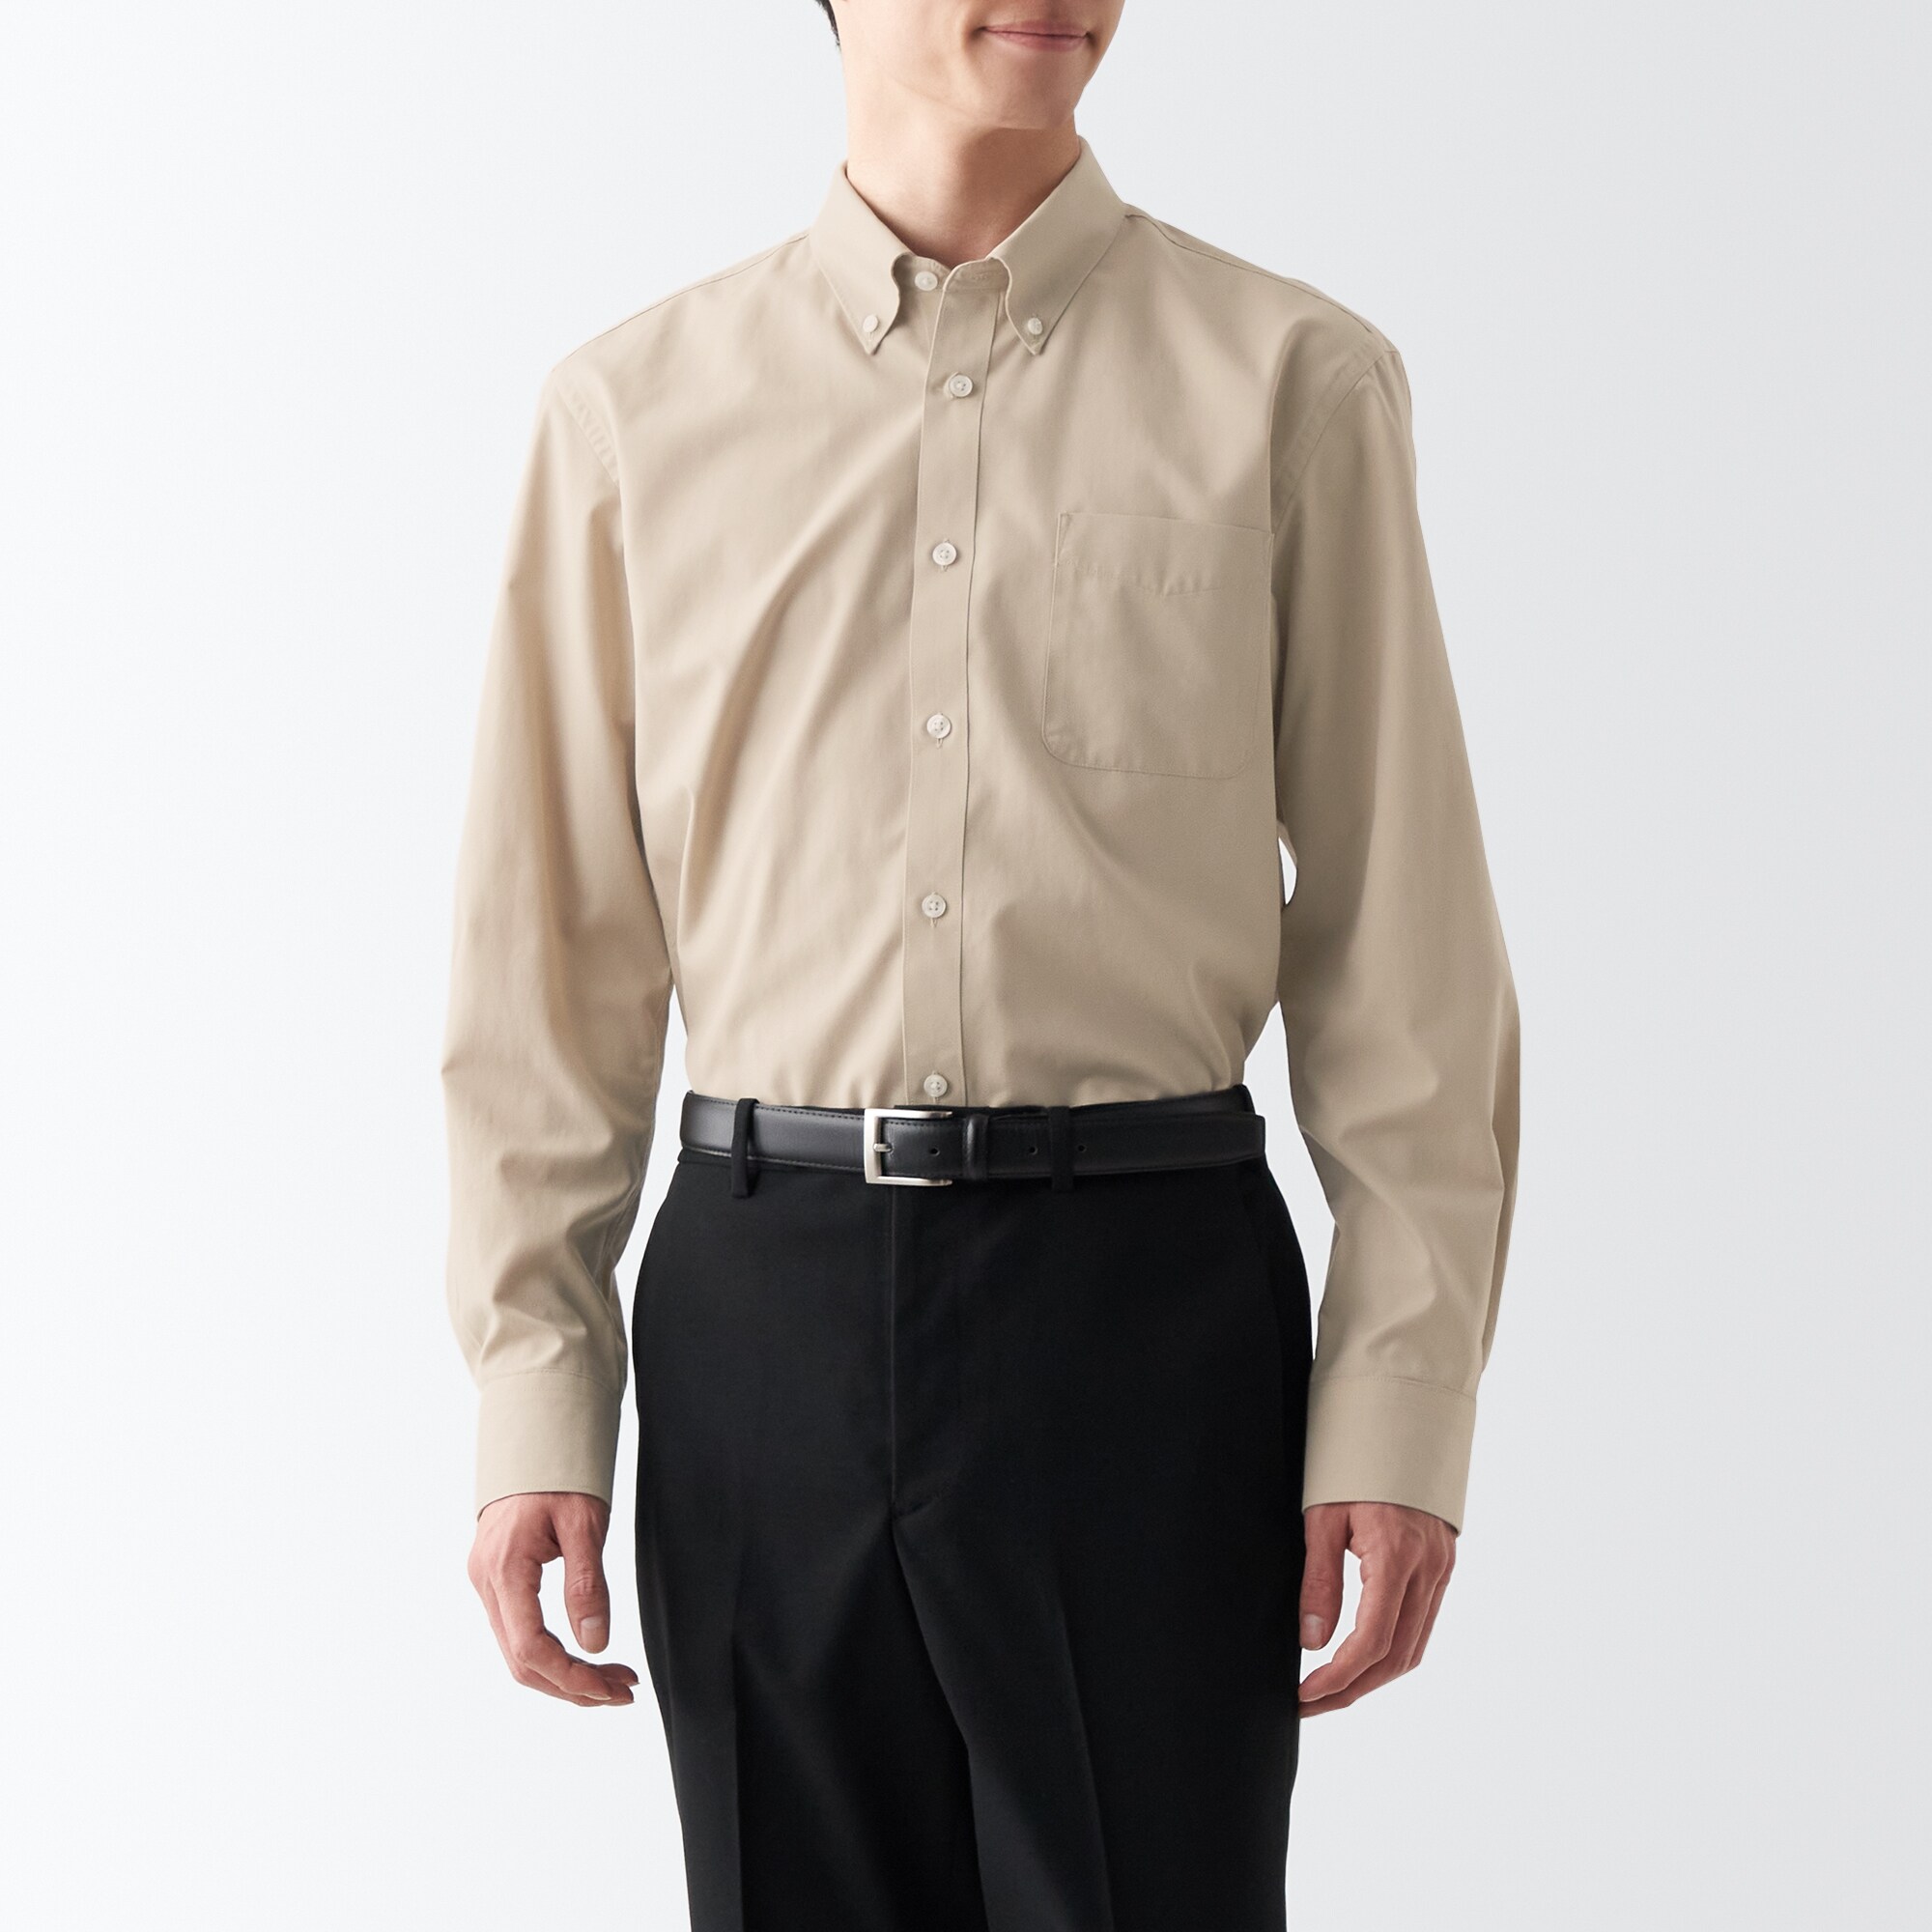 무인양품 일본 남성 긴팔 셔츠 구김 방지 버튼 다운